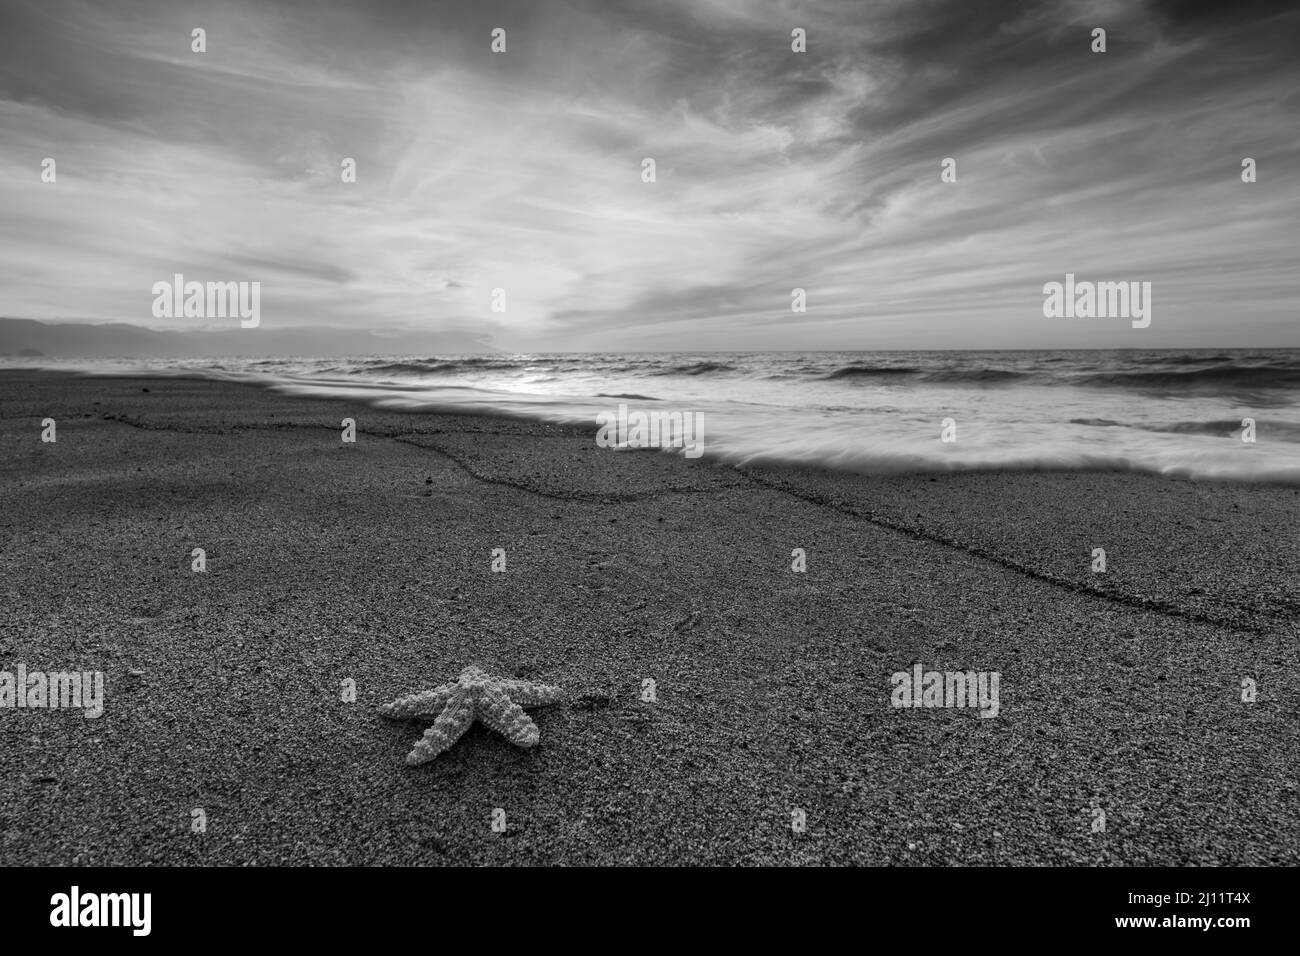 Seesterne Ozeanlandschaft mit Einem detaillierten sandgekräuselten Vordergrund im hochauflösenden Schwarzweiß-Bildformat Stockfoto